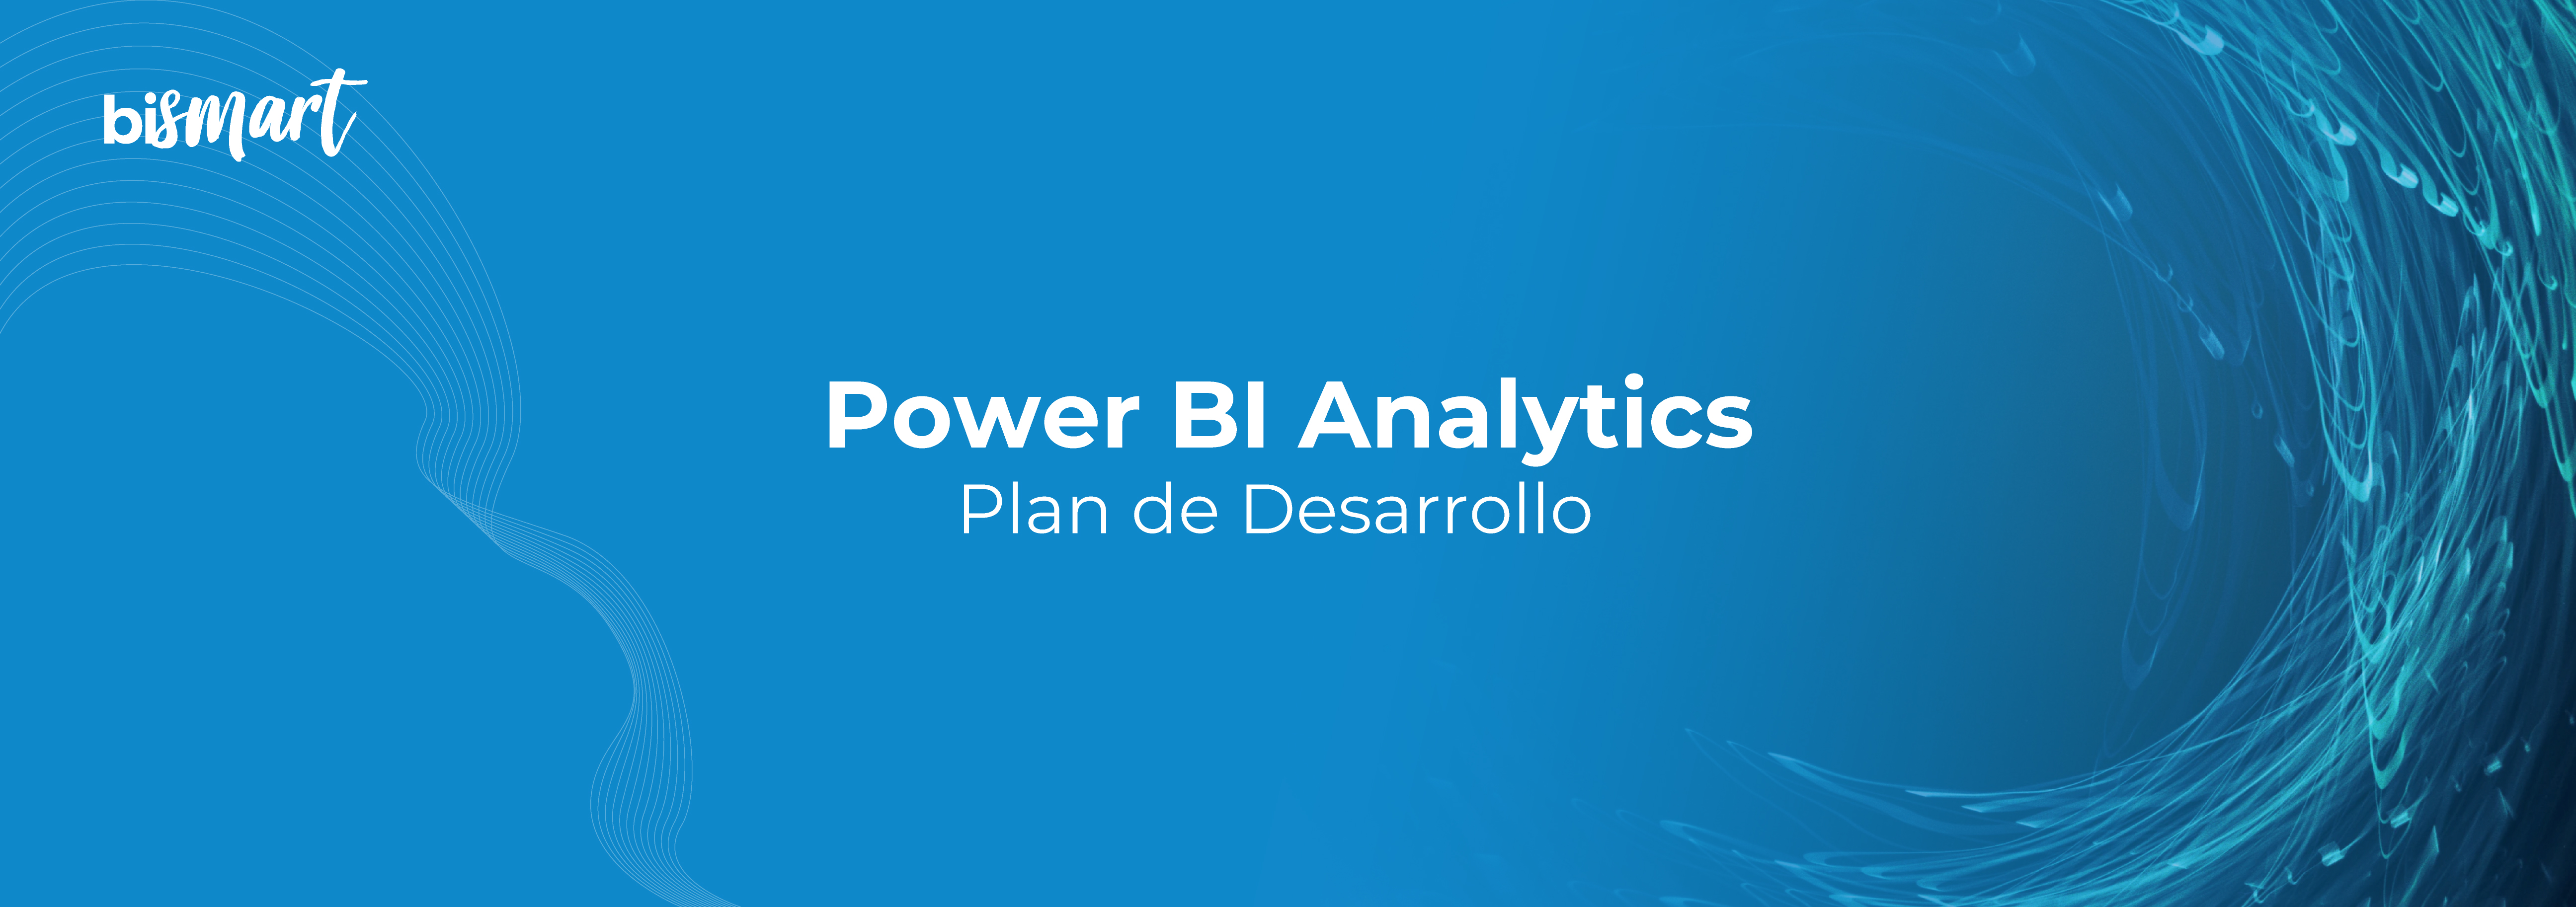 PowerBI-Analytics-01---Plan-de-desarrollo